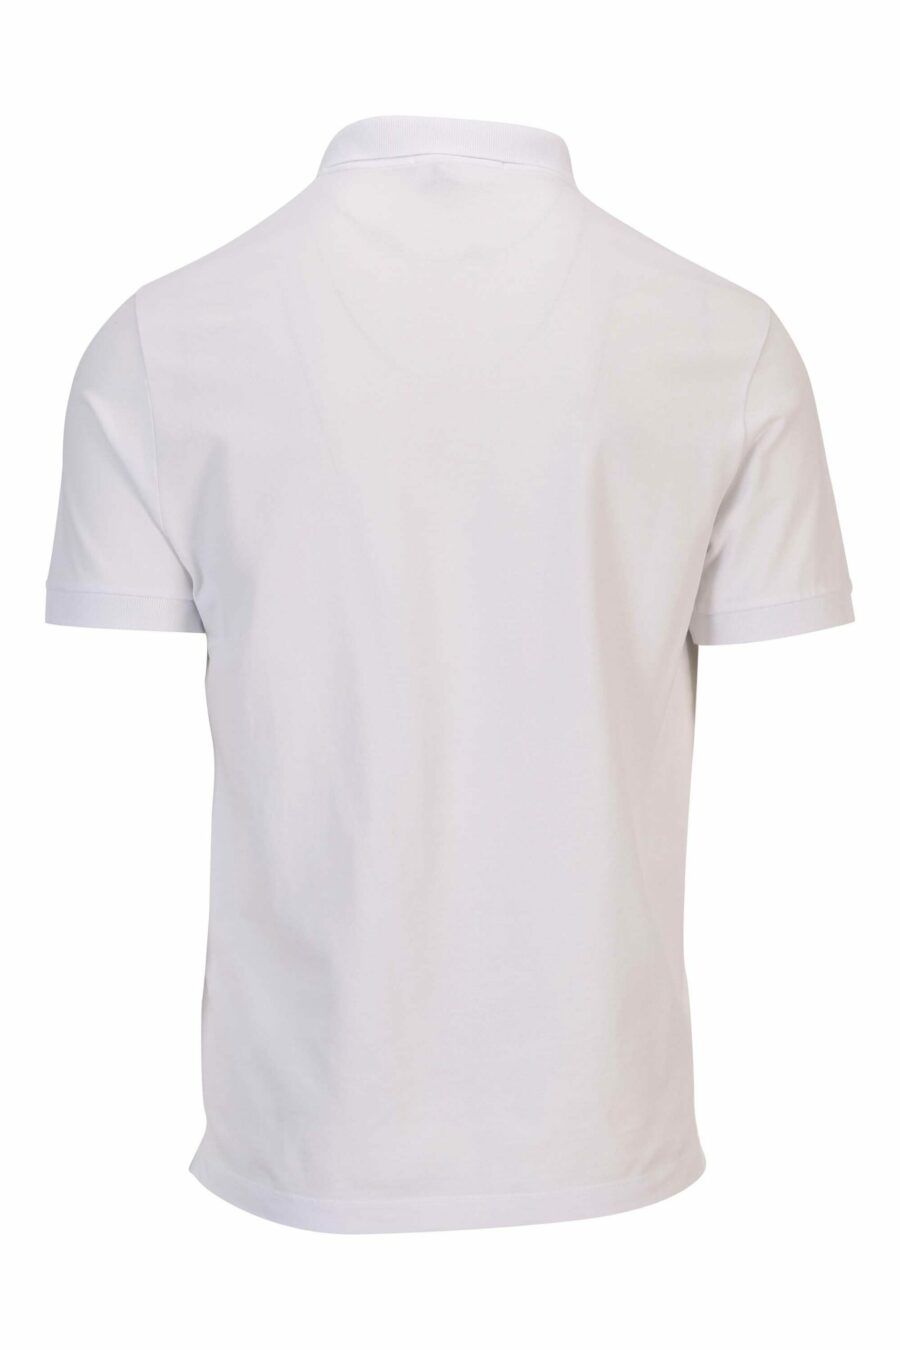 Weißes Slim Fit Poloshirt mit Mini-Logo-Kompass-Aufnäher - 8052572856815 1 skaliert